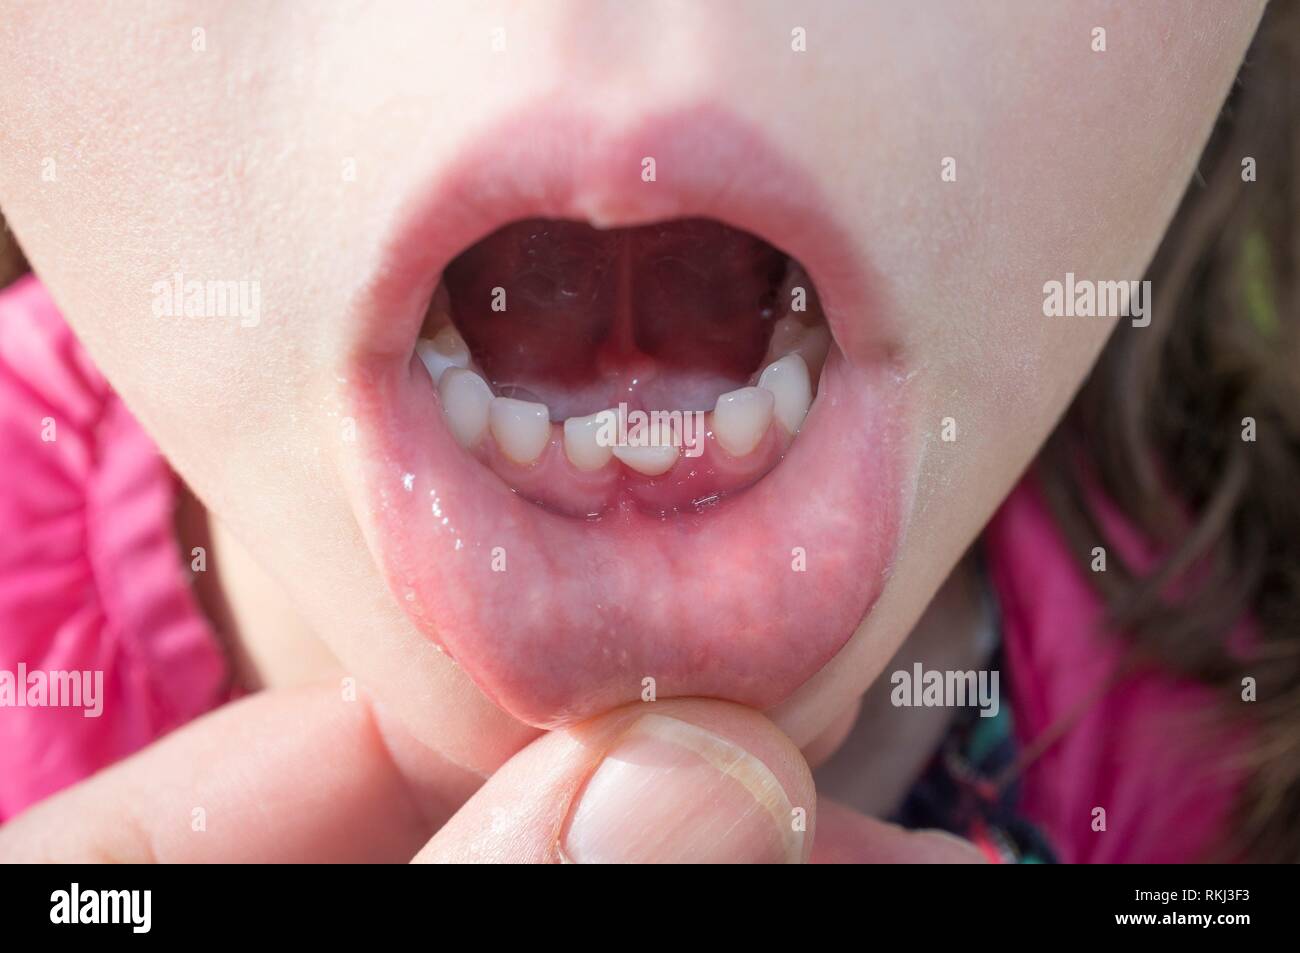 Wenig 5 Jahre altes Mädchen ihre Erste lockere Zahn angezeigt. Nahaufnahme. Stockfoto